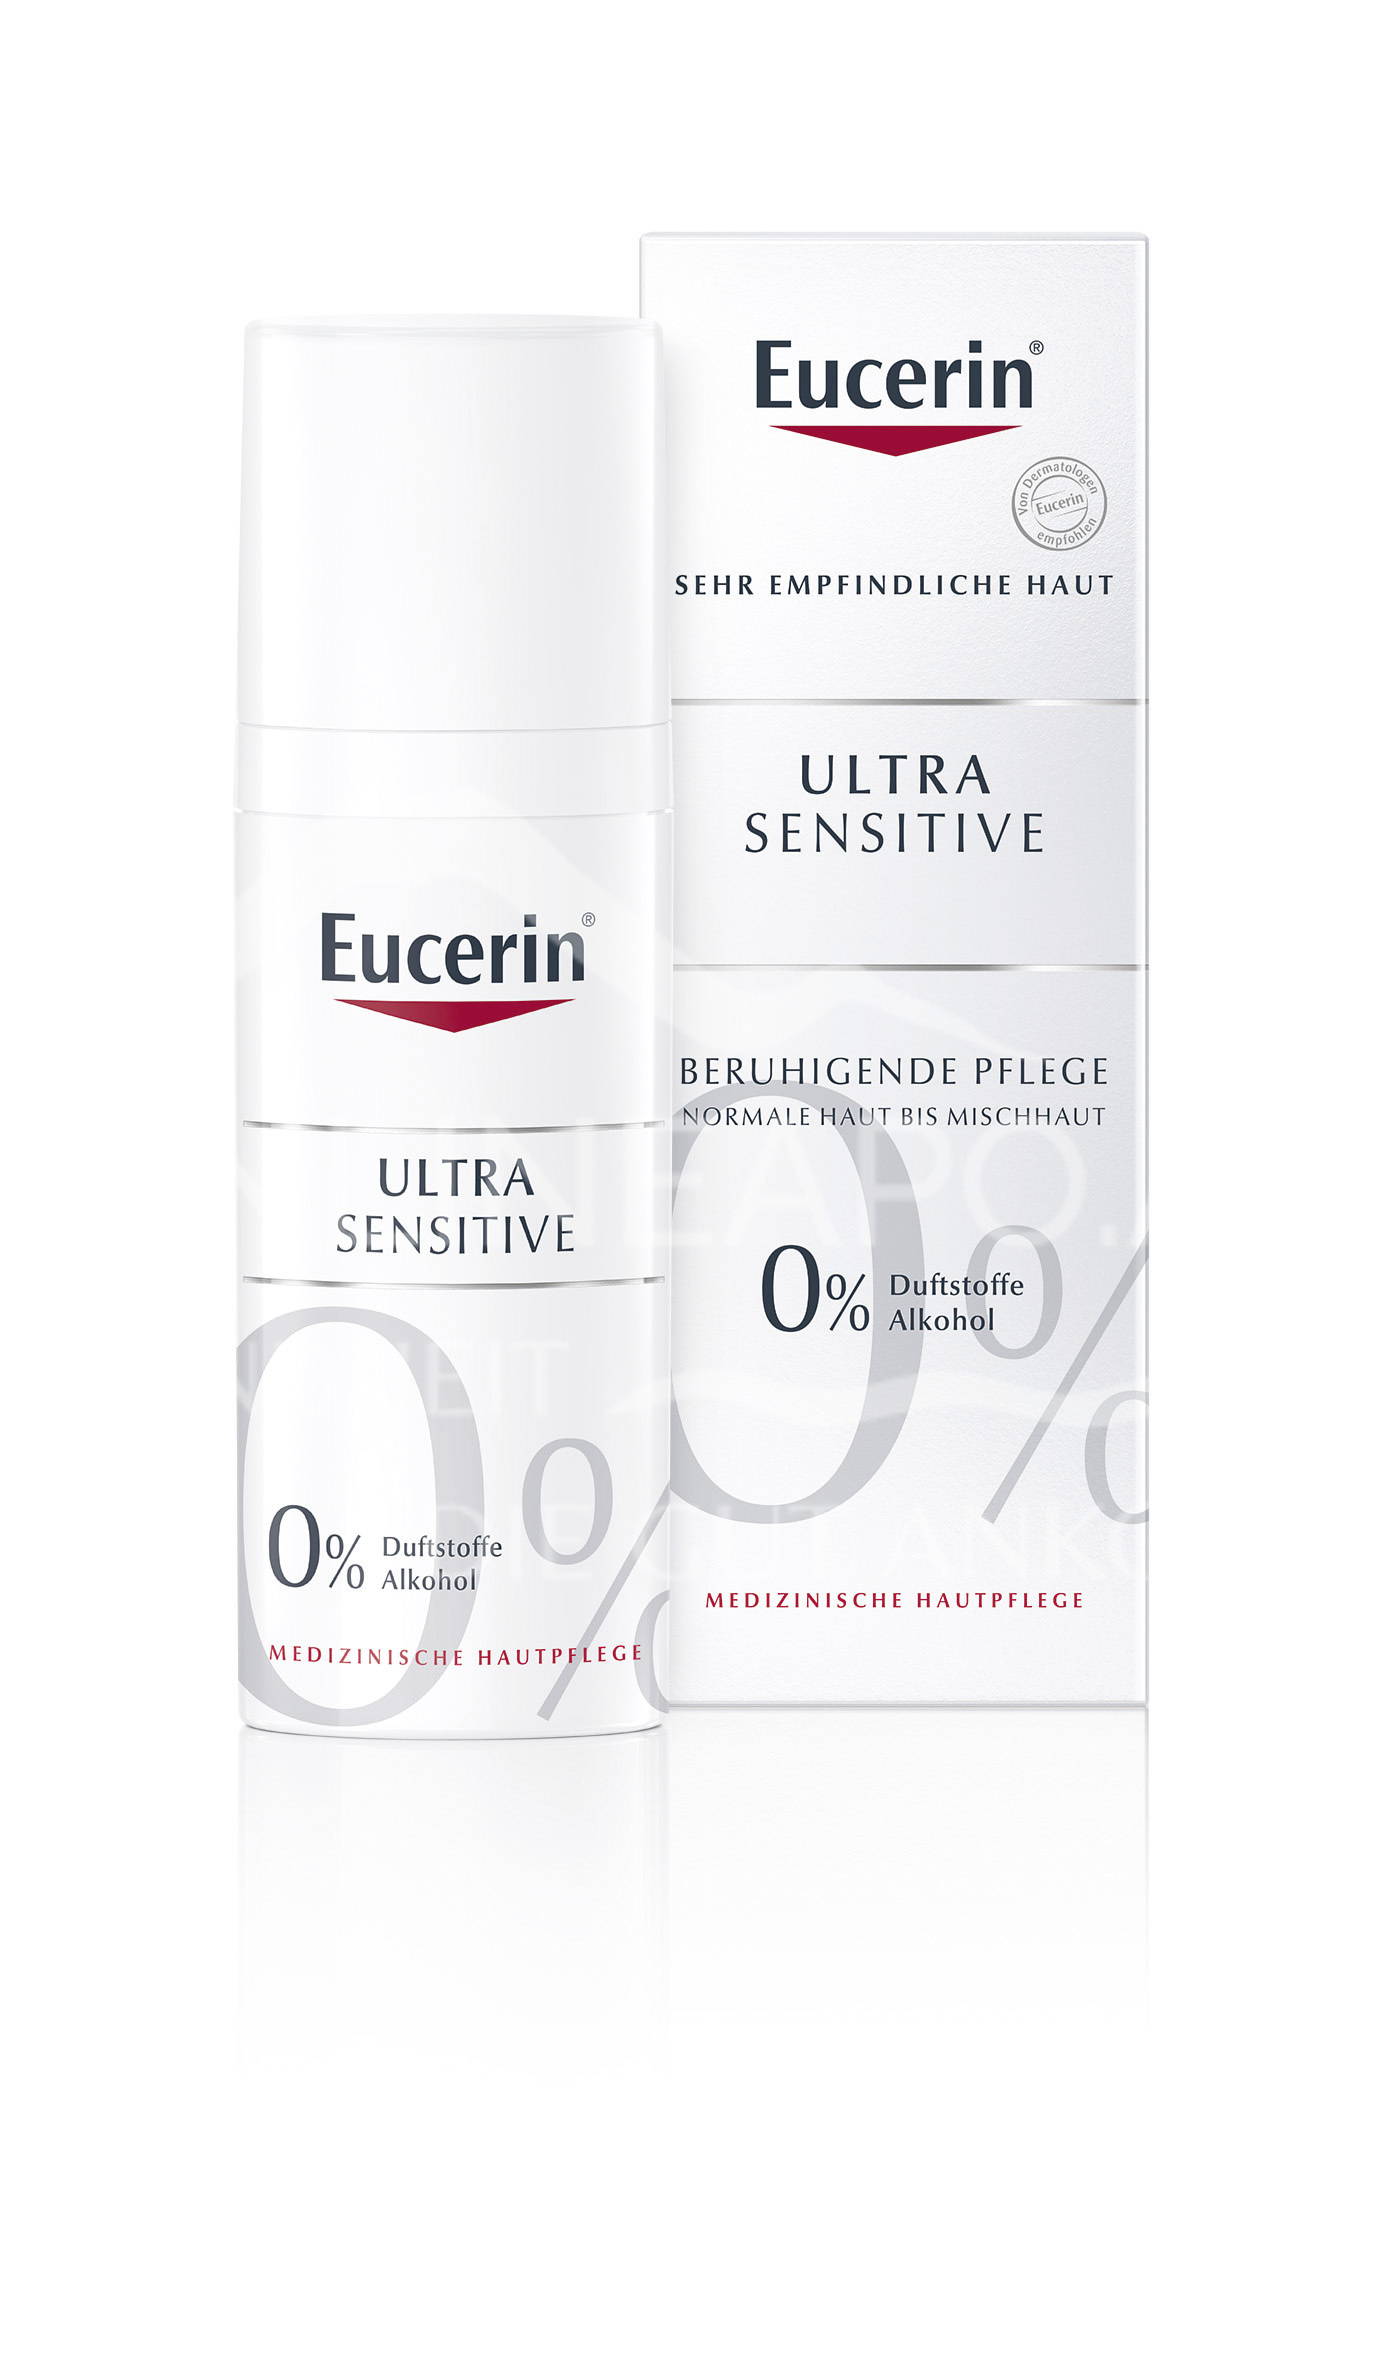 Eucerin® UltraSENSITIVE Beruhigende Pflege für Normale und Mischhaut